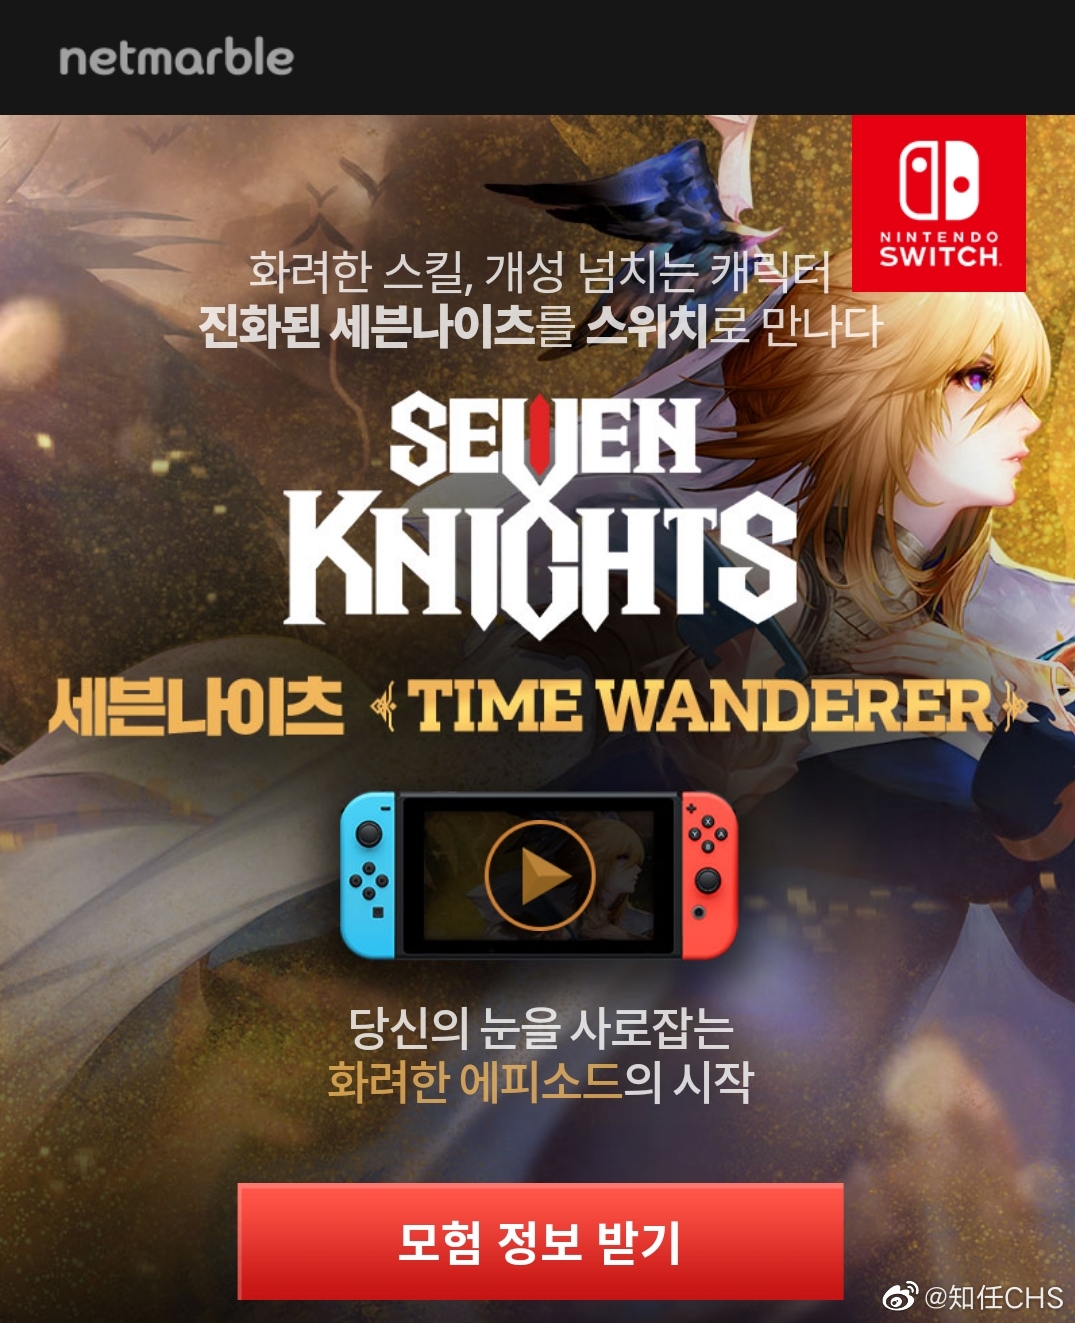 韩国游戏 七骑士 Nintendo Switch 版受疫情影响不得不延期发售 原 来自网易大神圈子 知任chs